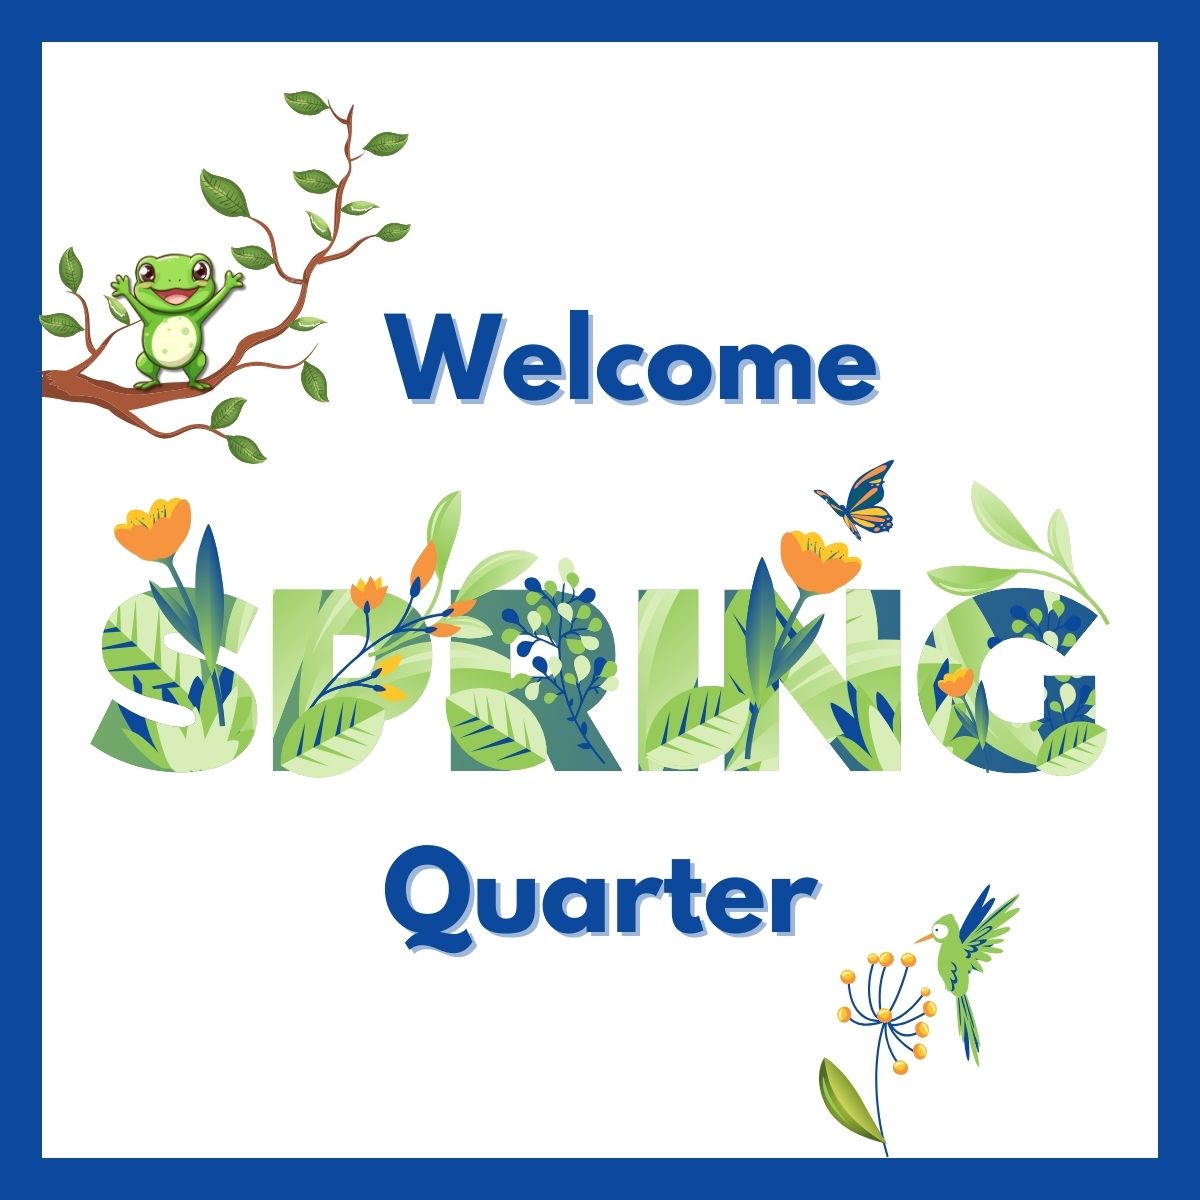 Welcome Spring Quarter!